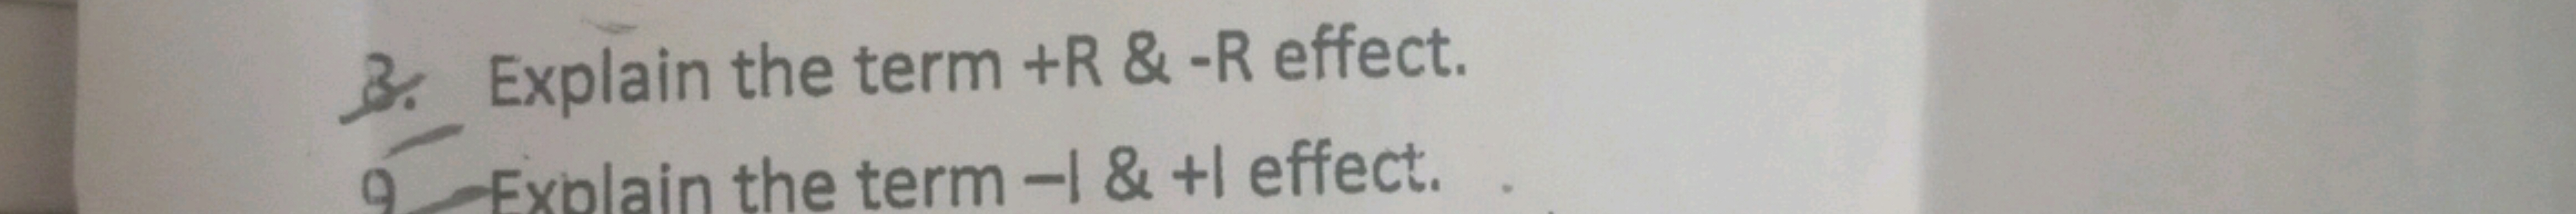 3. Explain the term +R \& −R effect.
9xblain the term −1&+1 effect.
